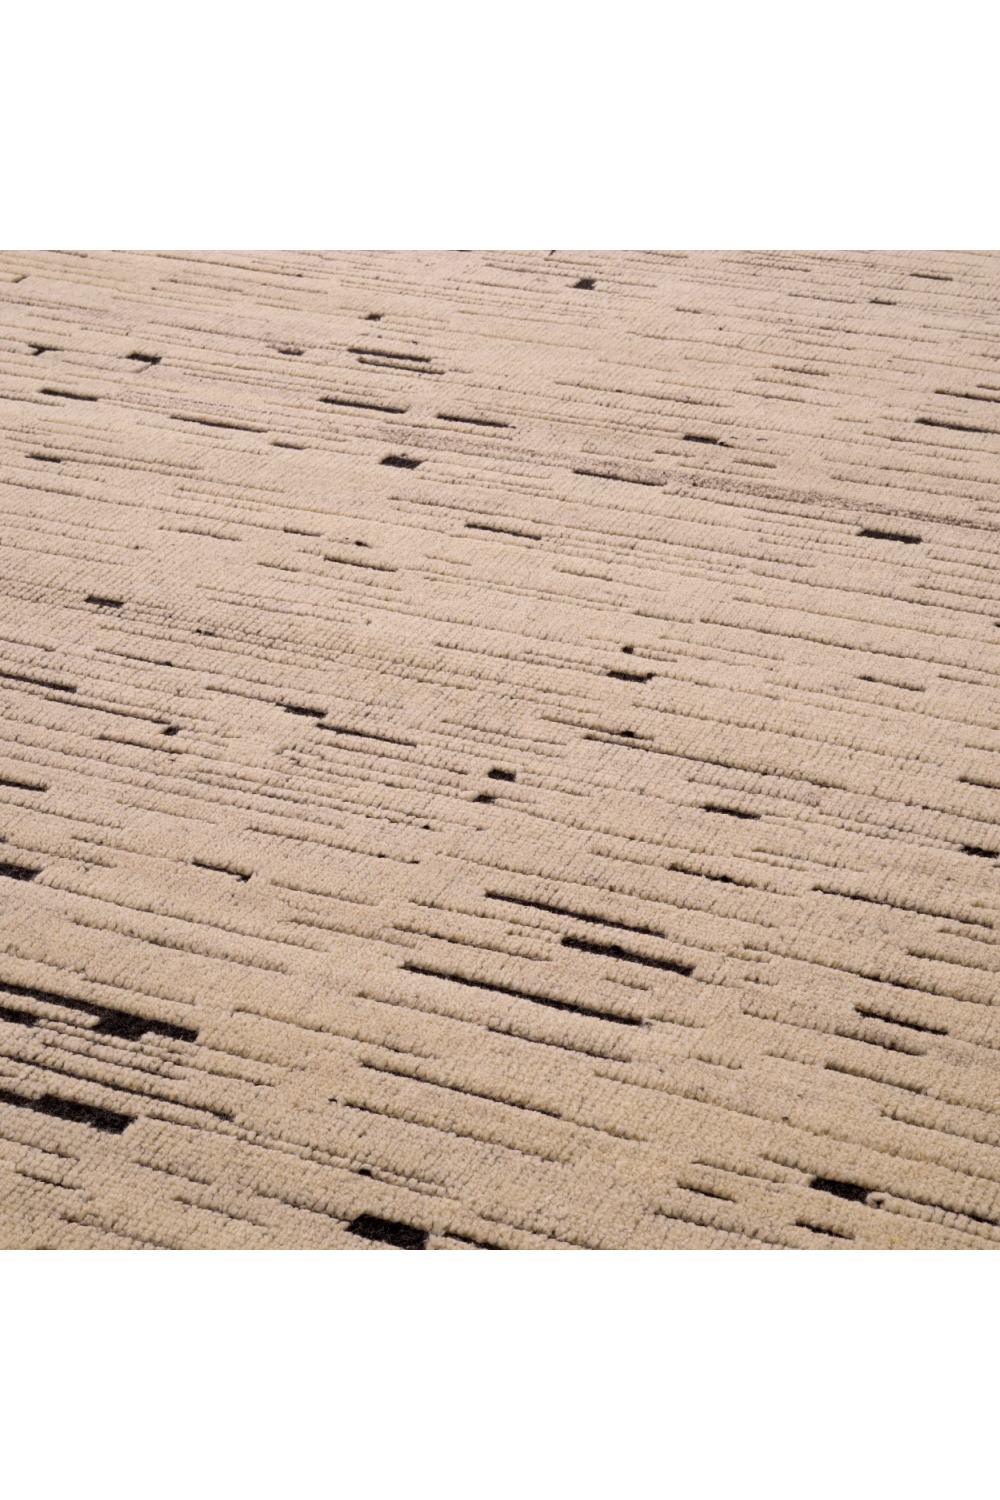 Beige Wool Carpet | Eichholtz Talitha | Oroa.com